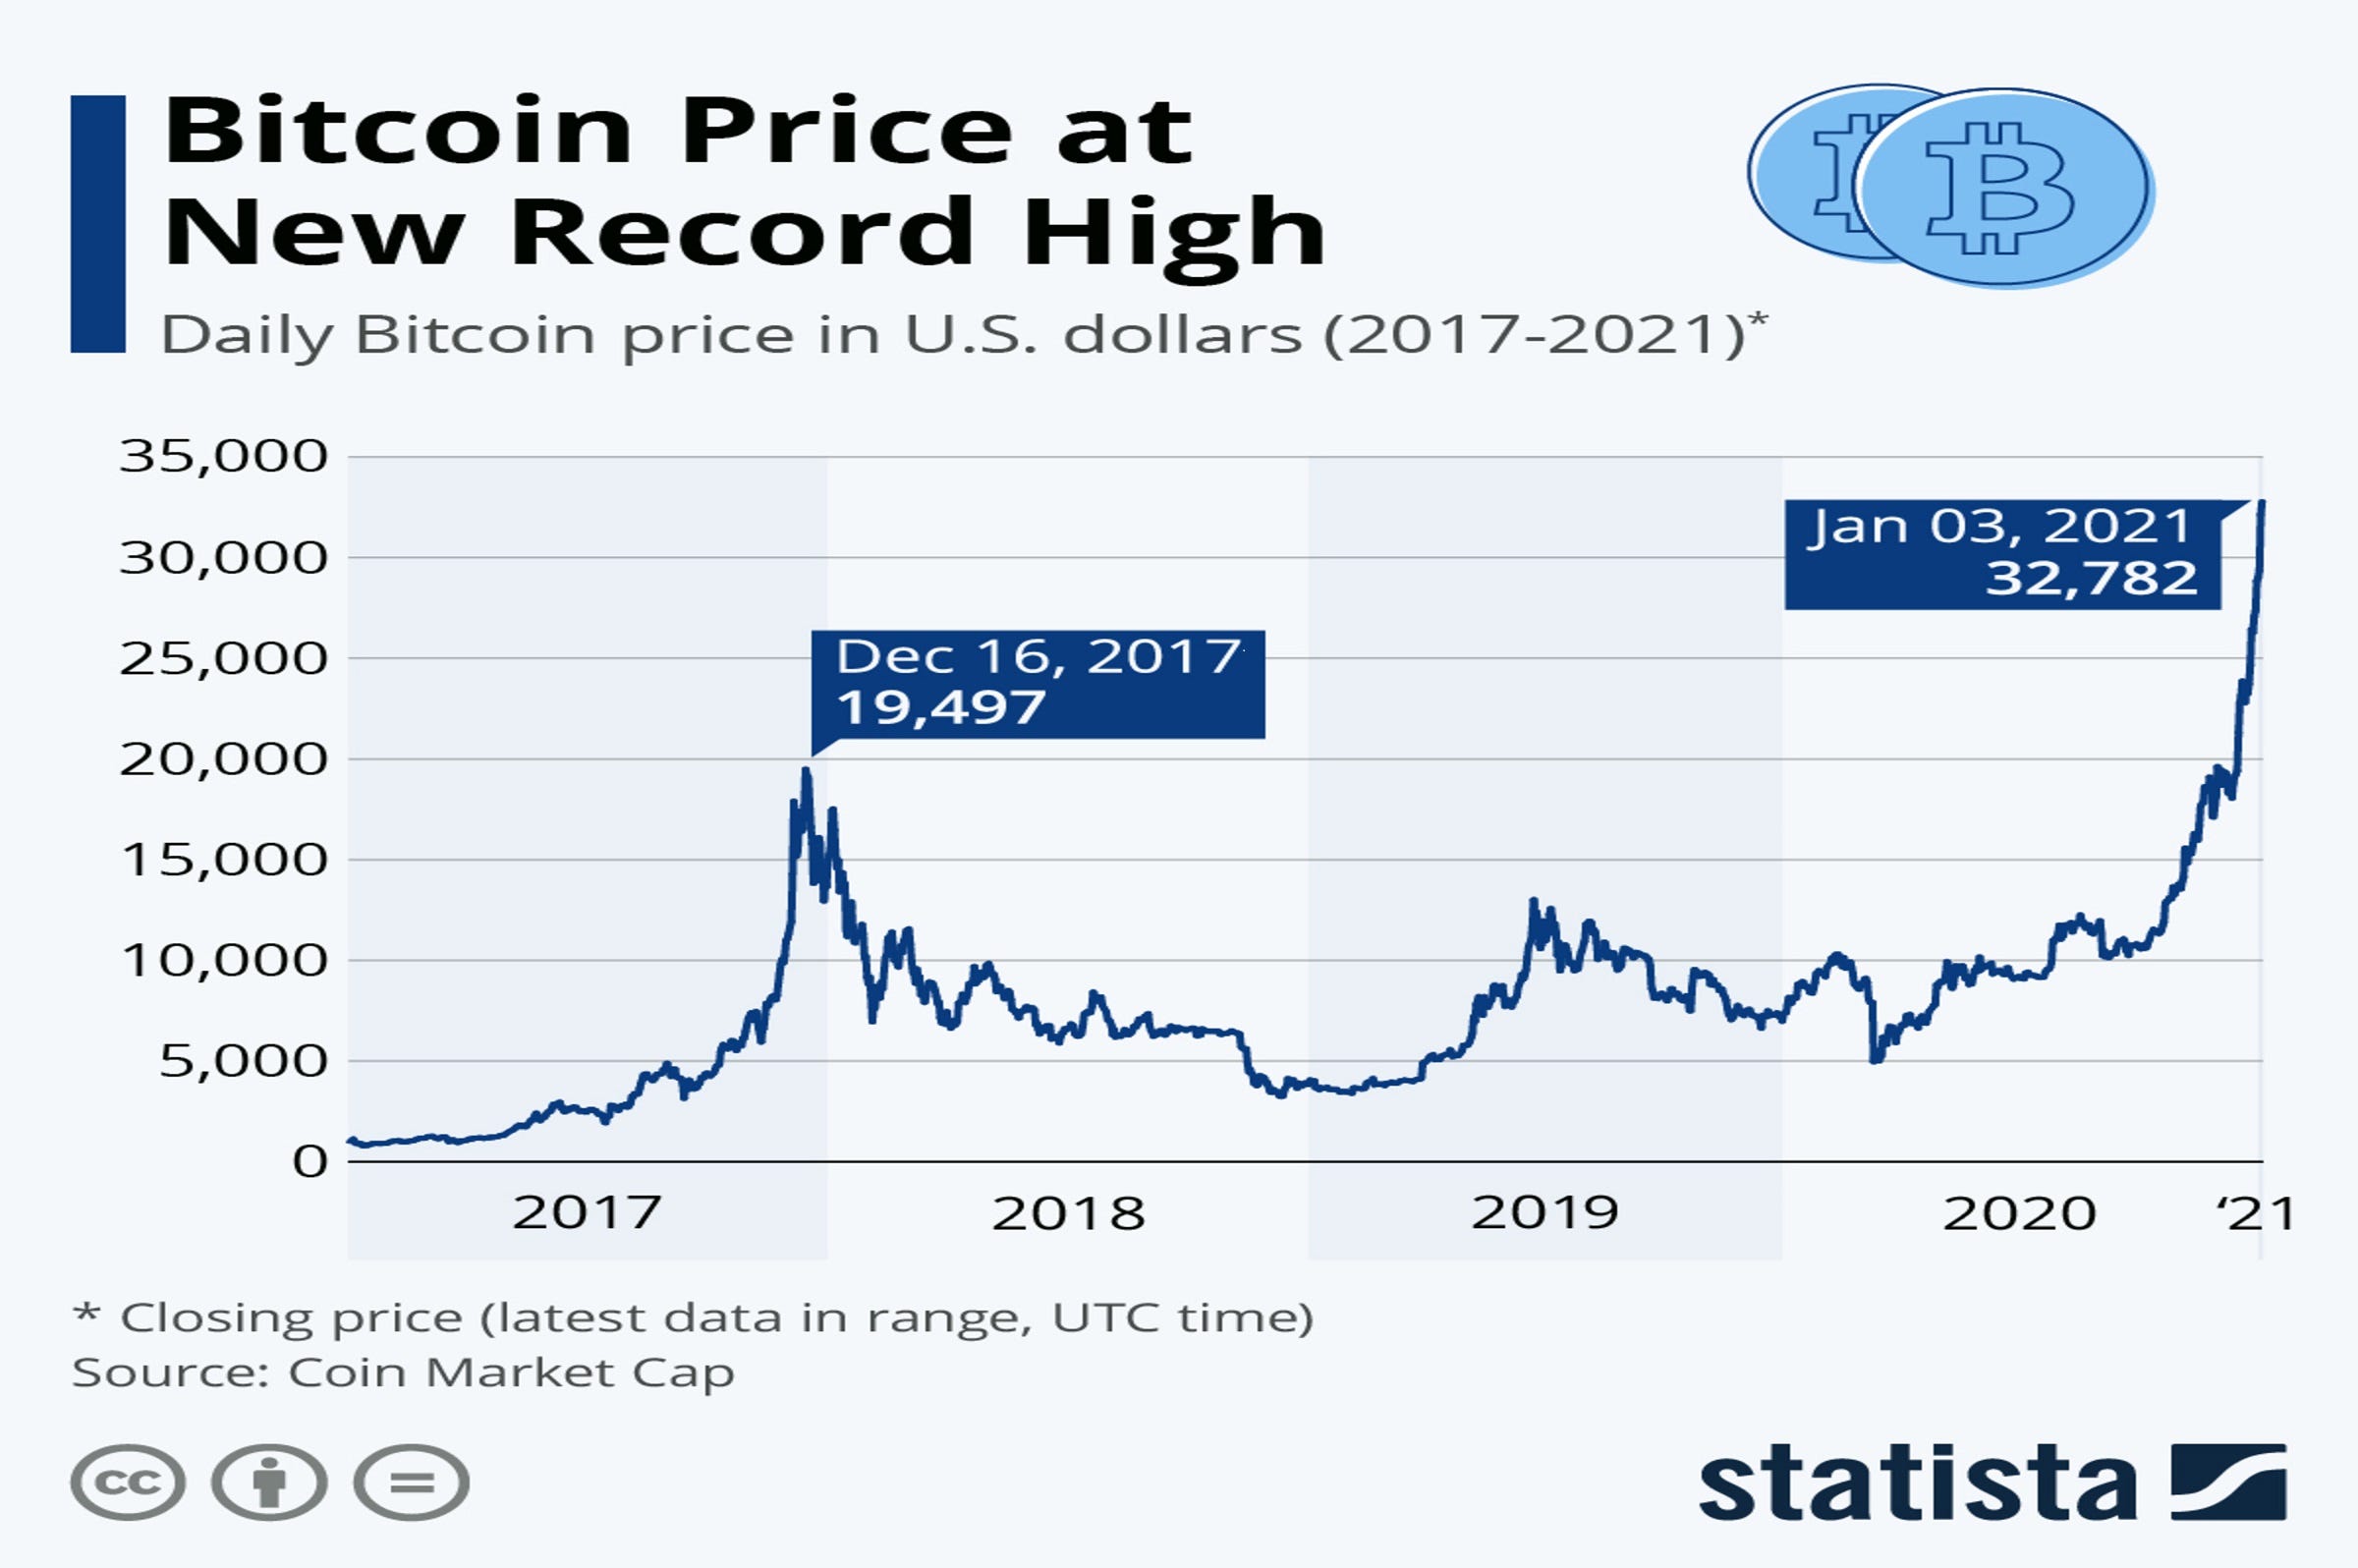 inversión de bitcoin confía en futuro invertir en ethereum sobre bitcoin